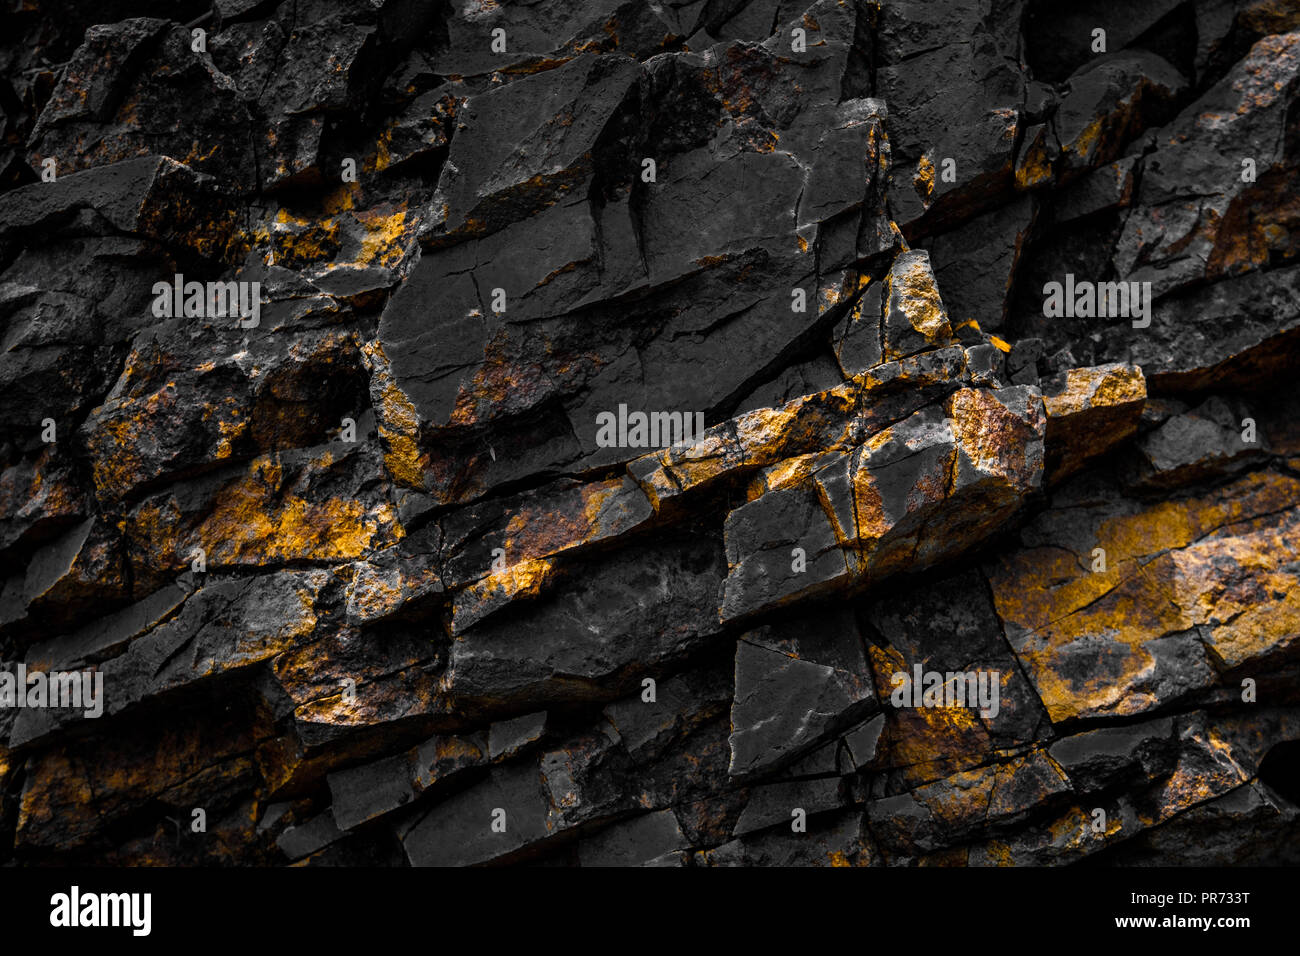 Black Rock Hintergrund mit Goldene/gelbe Farbe - Stockfoto